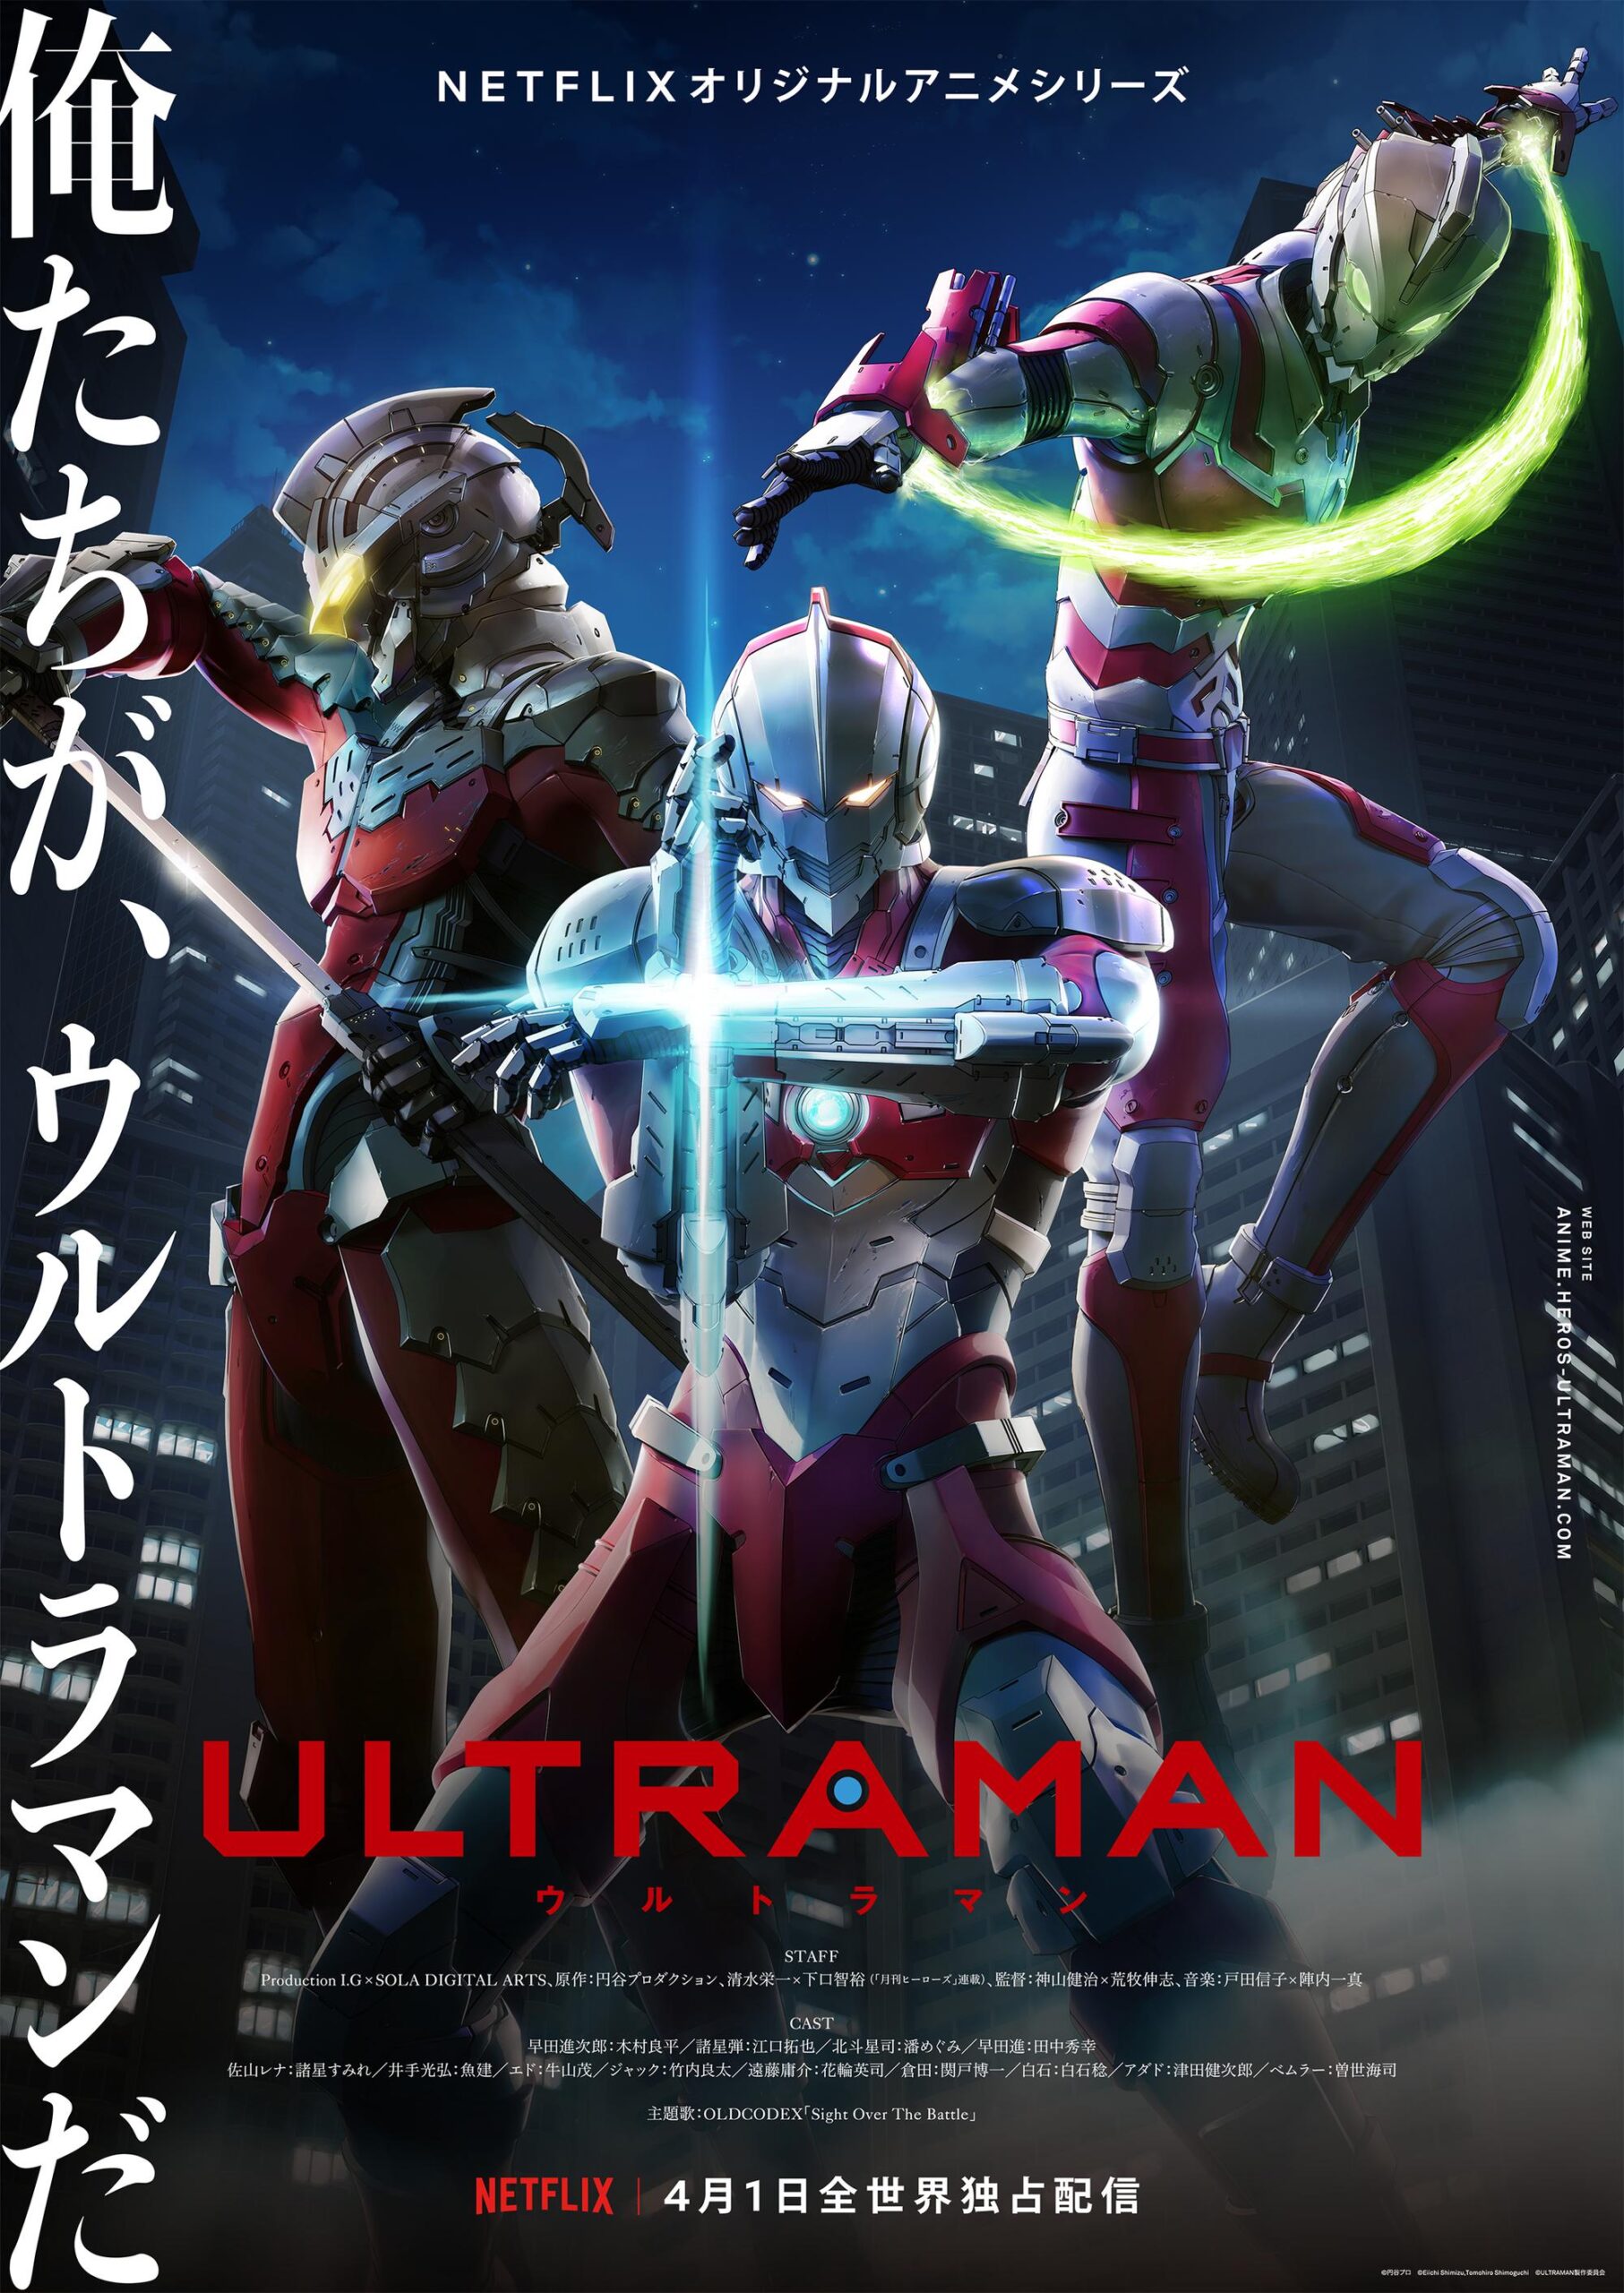 Ultramanuary | Netflix Ultraman